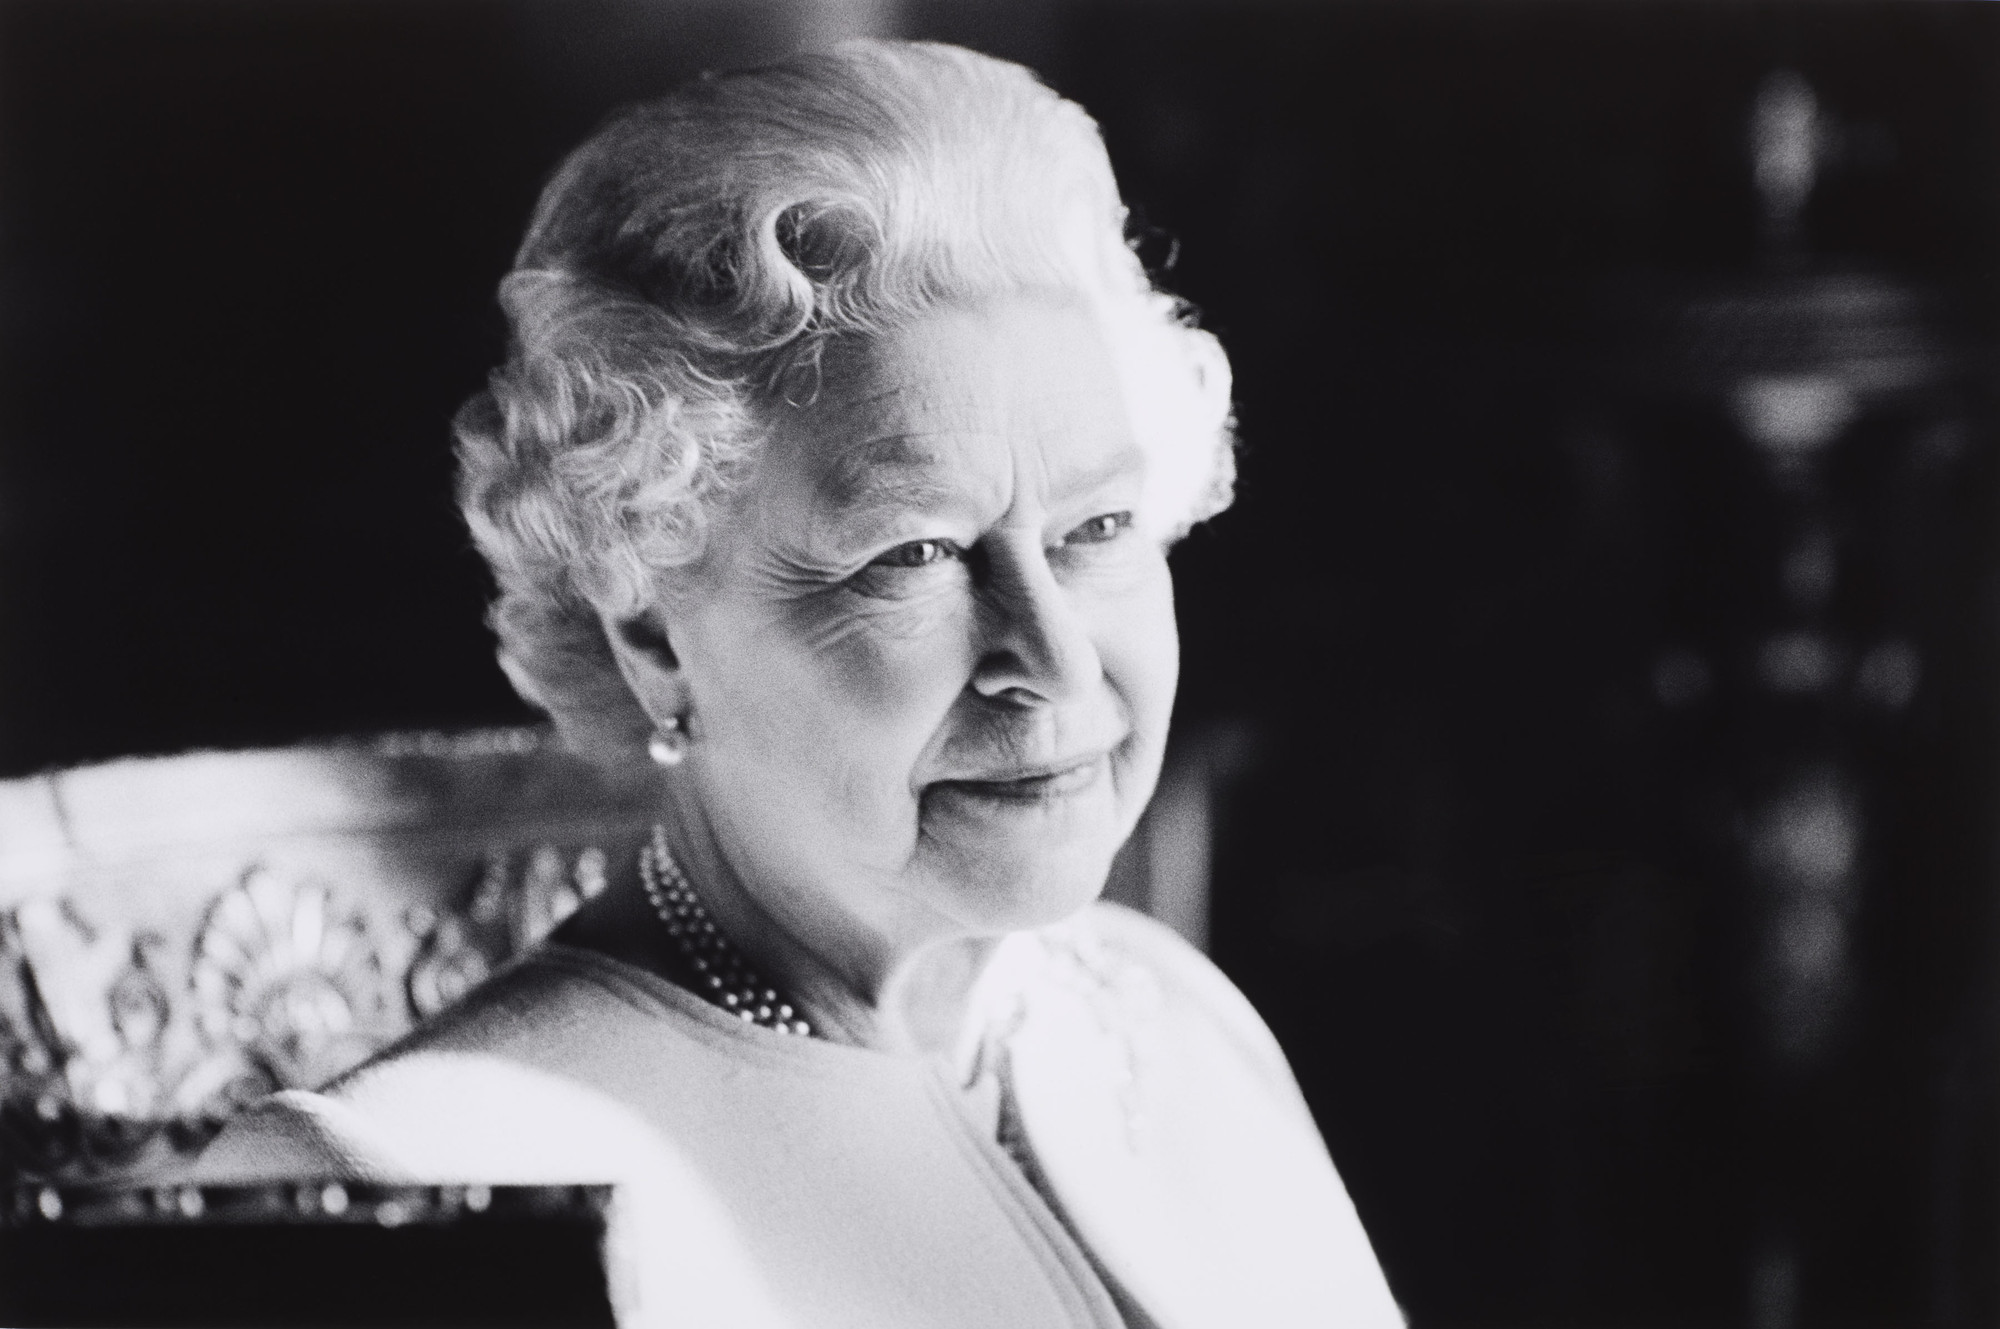 La Reina Isabel II sobrevivió a la pandemia, una guerra mundial y su partida genera incertidumbre por el futuro de Gran Bretaña